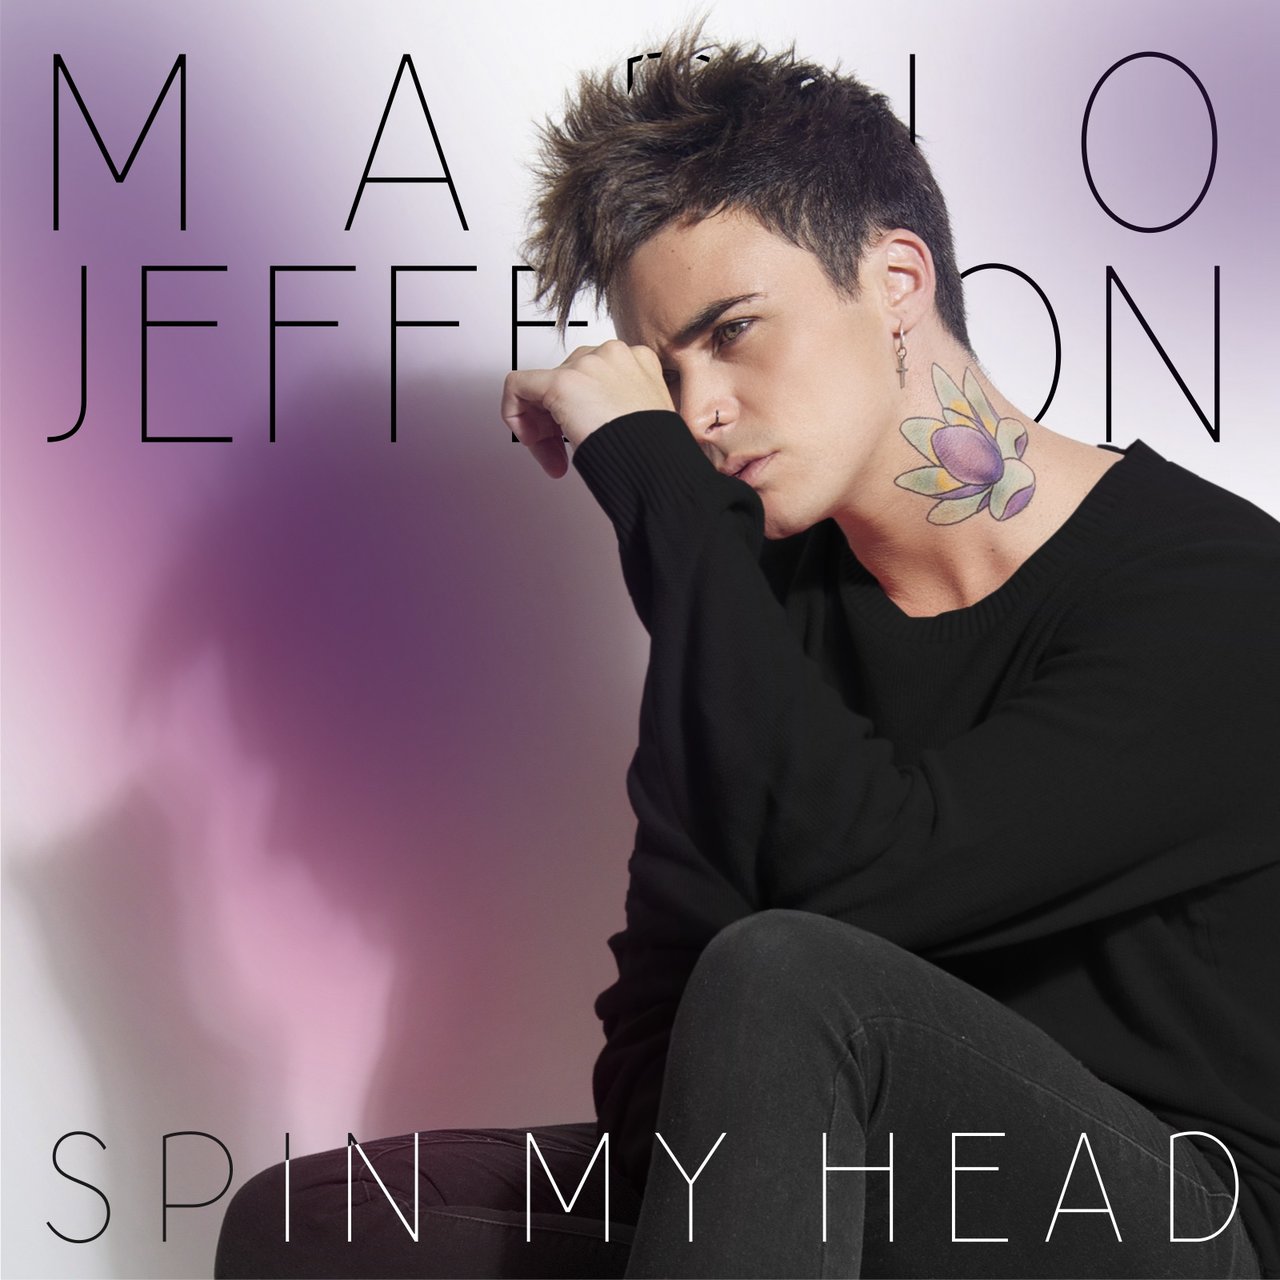 Mario Jefferson Spin My Head cover artwork